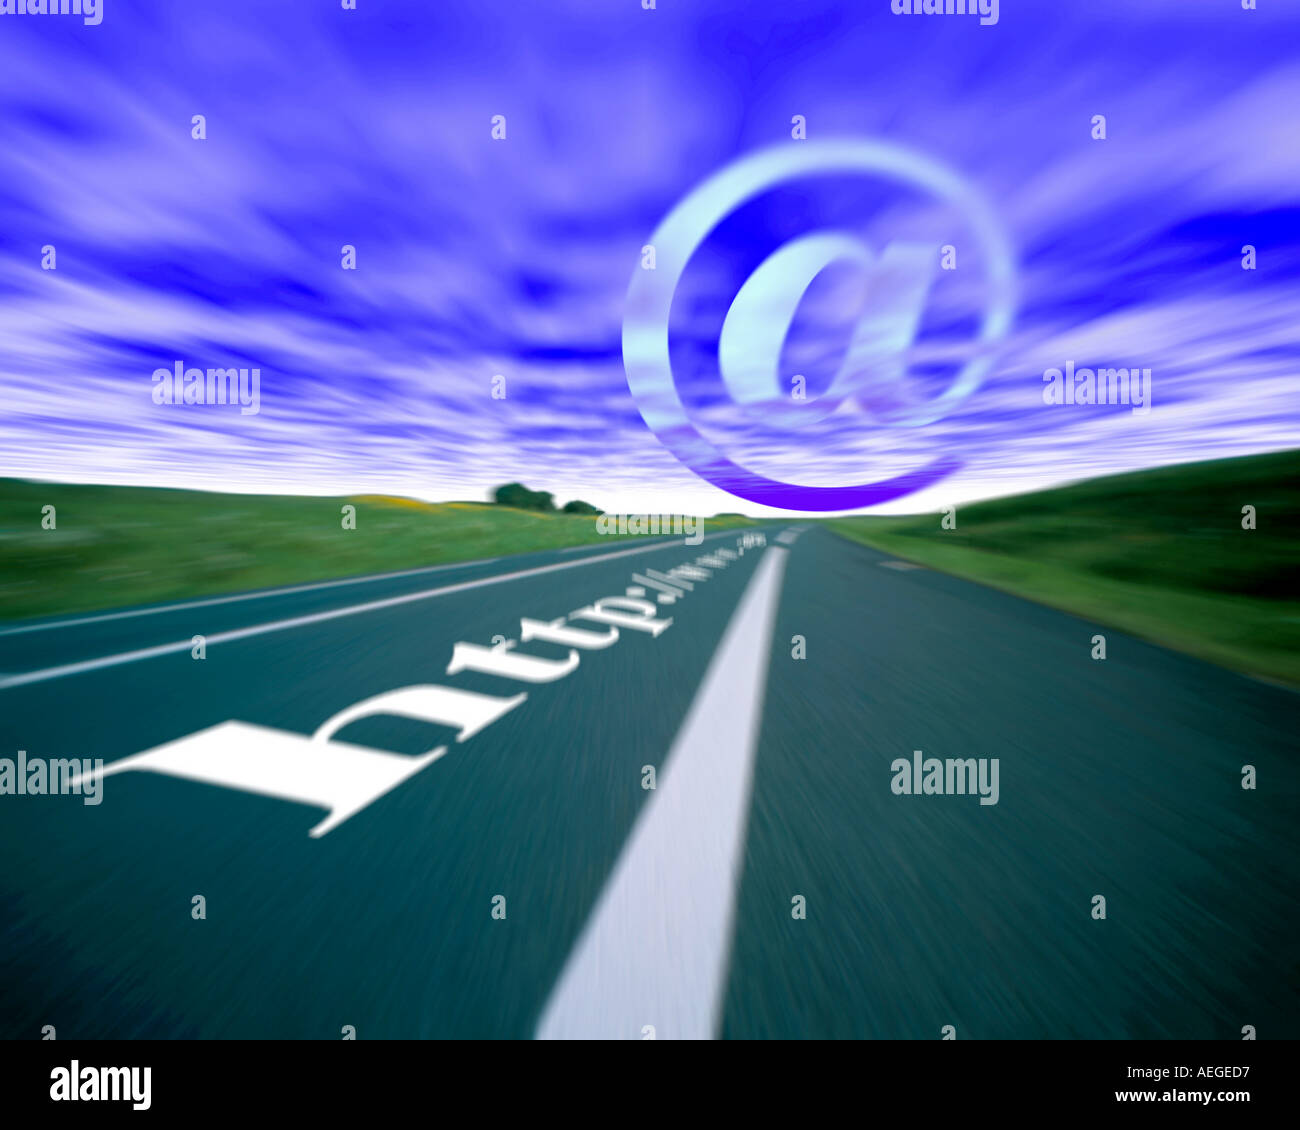 Office road autostrada prospettiva velocità di movimento conectivity blur obiettivo di destinazione internet www world wide web direzione libert Foto Stock